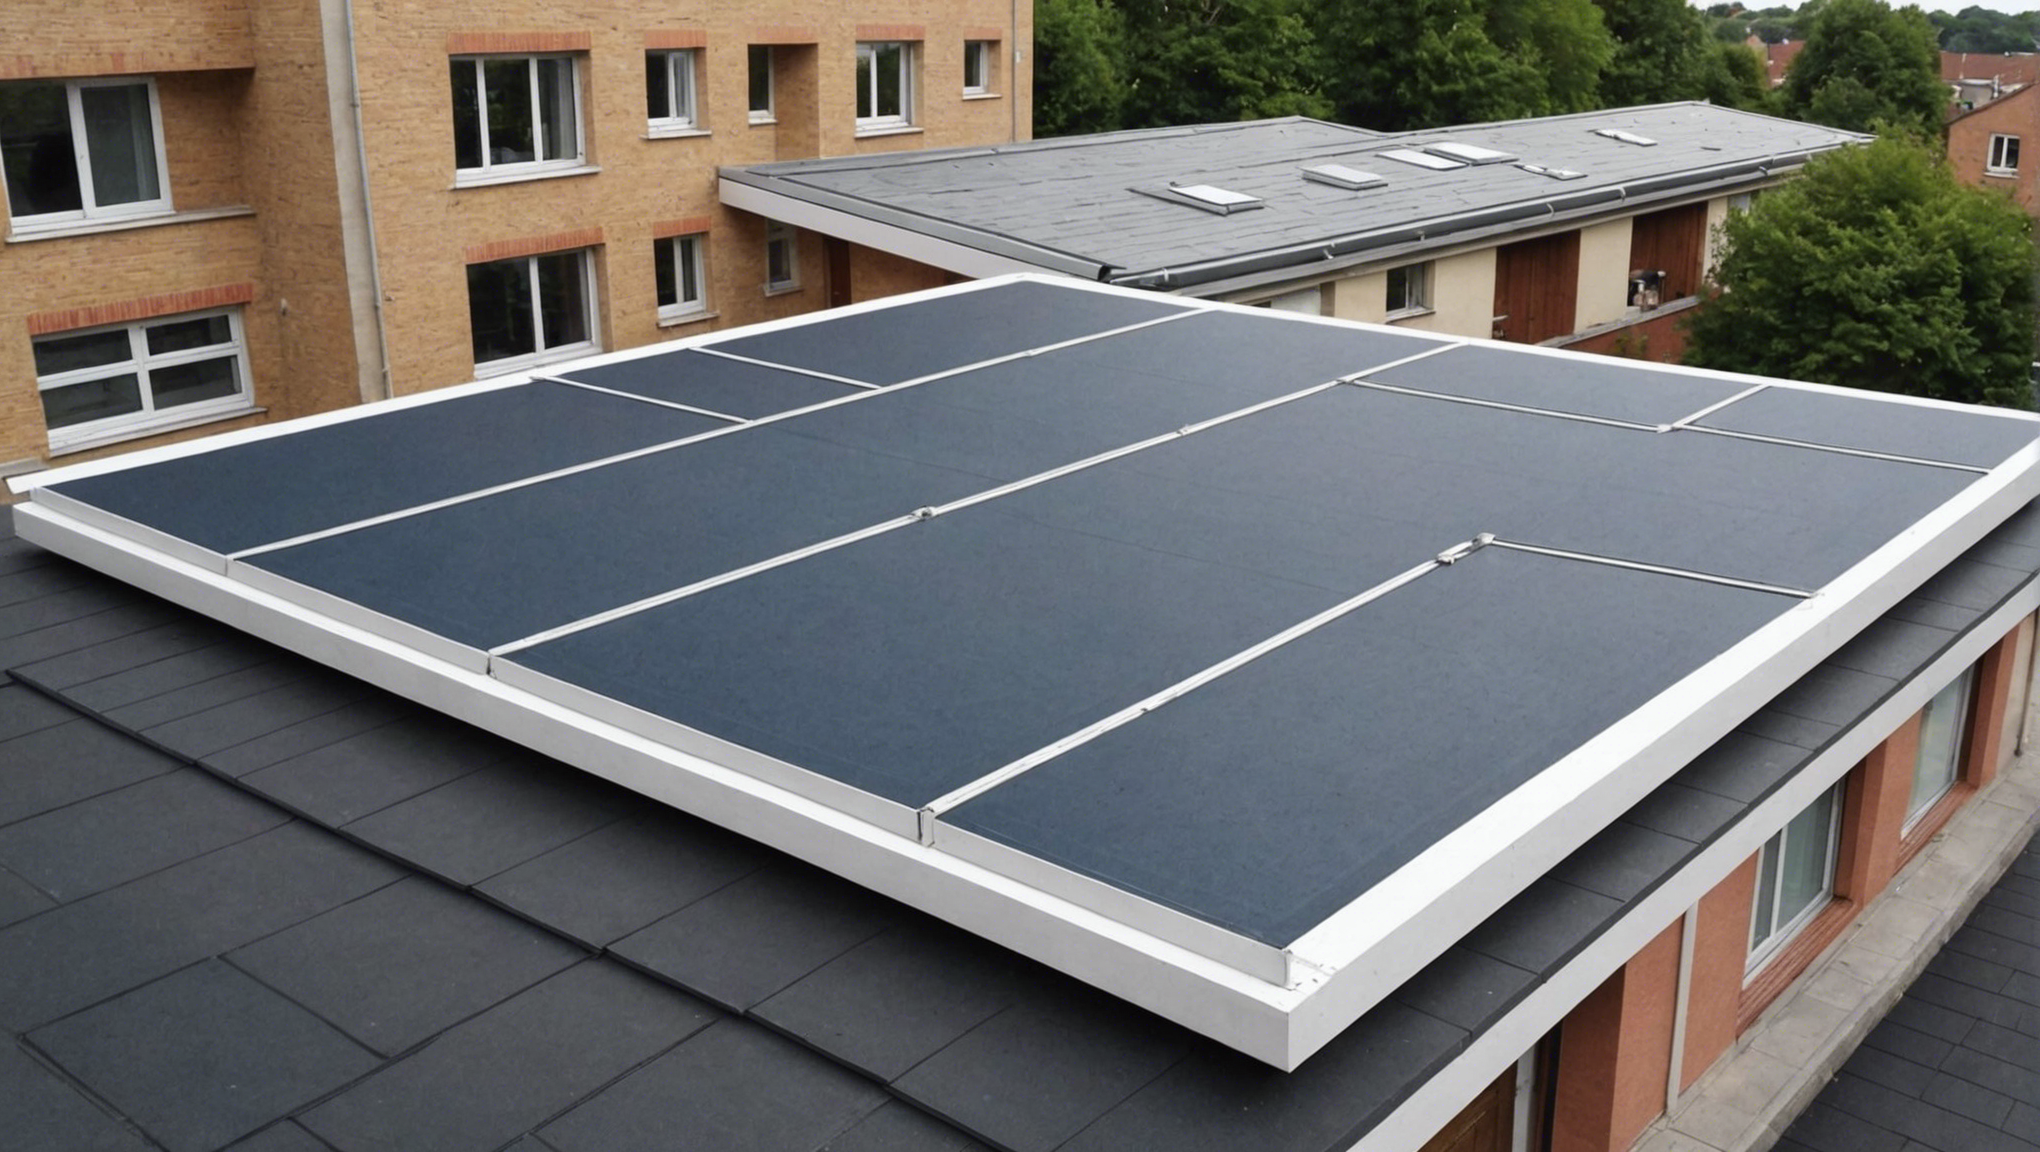 découvrez nos conseils pour assurer une isolation efficace pour une toiture plate et ainsi améliorer la performance énergétique de votre bâtiment.